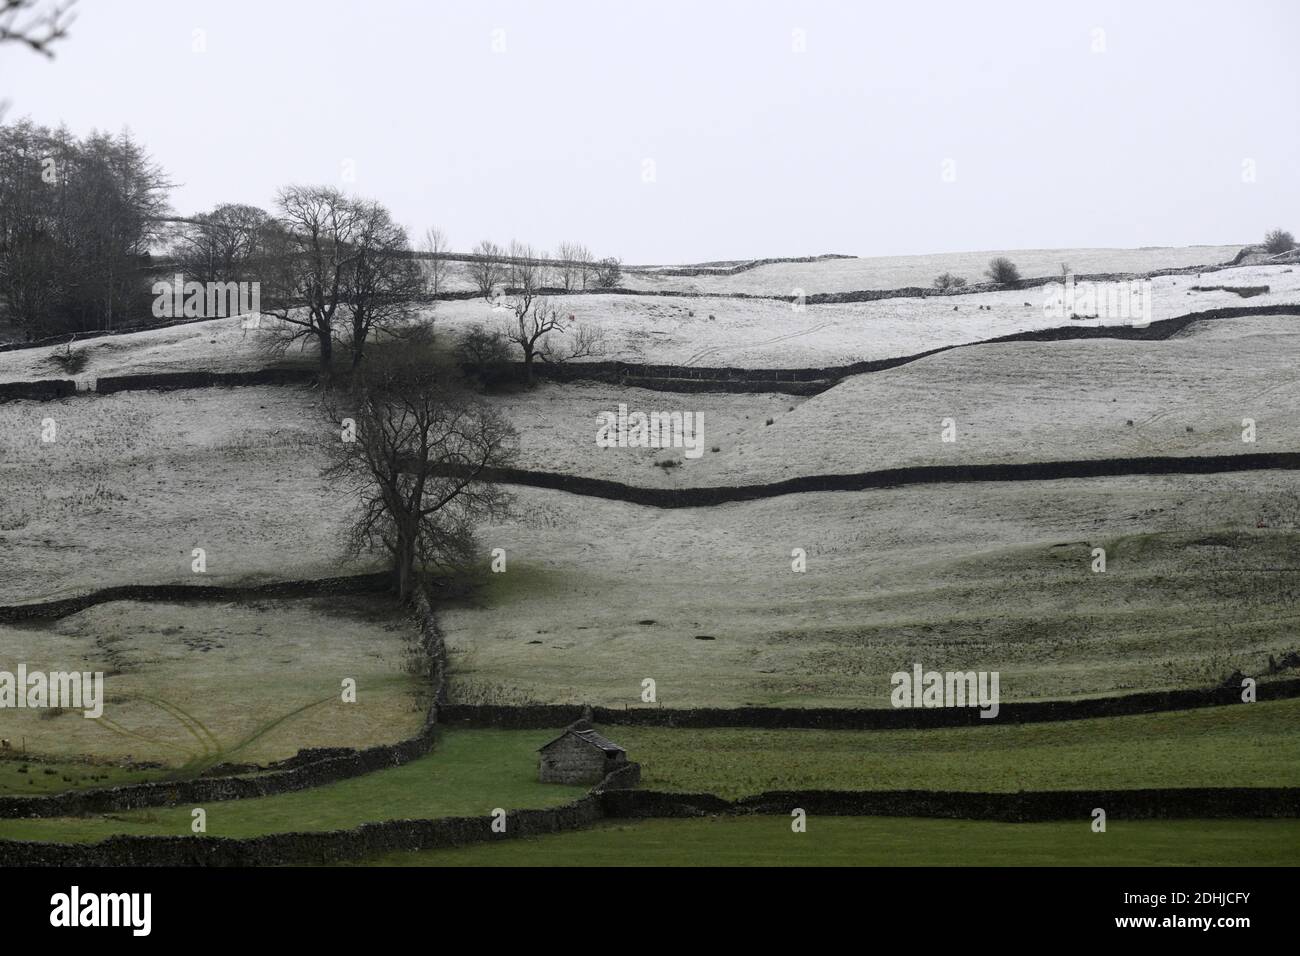 Nella foto è raffigurata una scena innevata nelle Yorkshire Dales sopra Settle. Meteo neve neve neve neve neve neve inverno nevicata Foto Stock